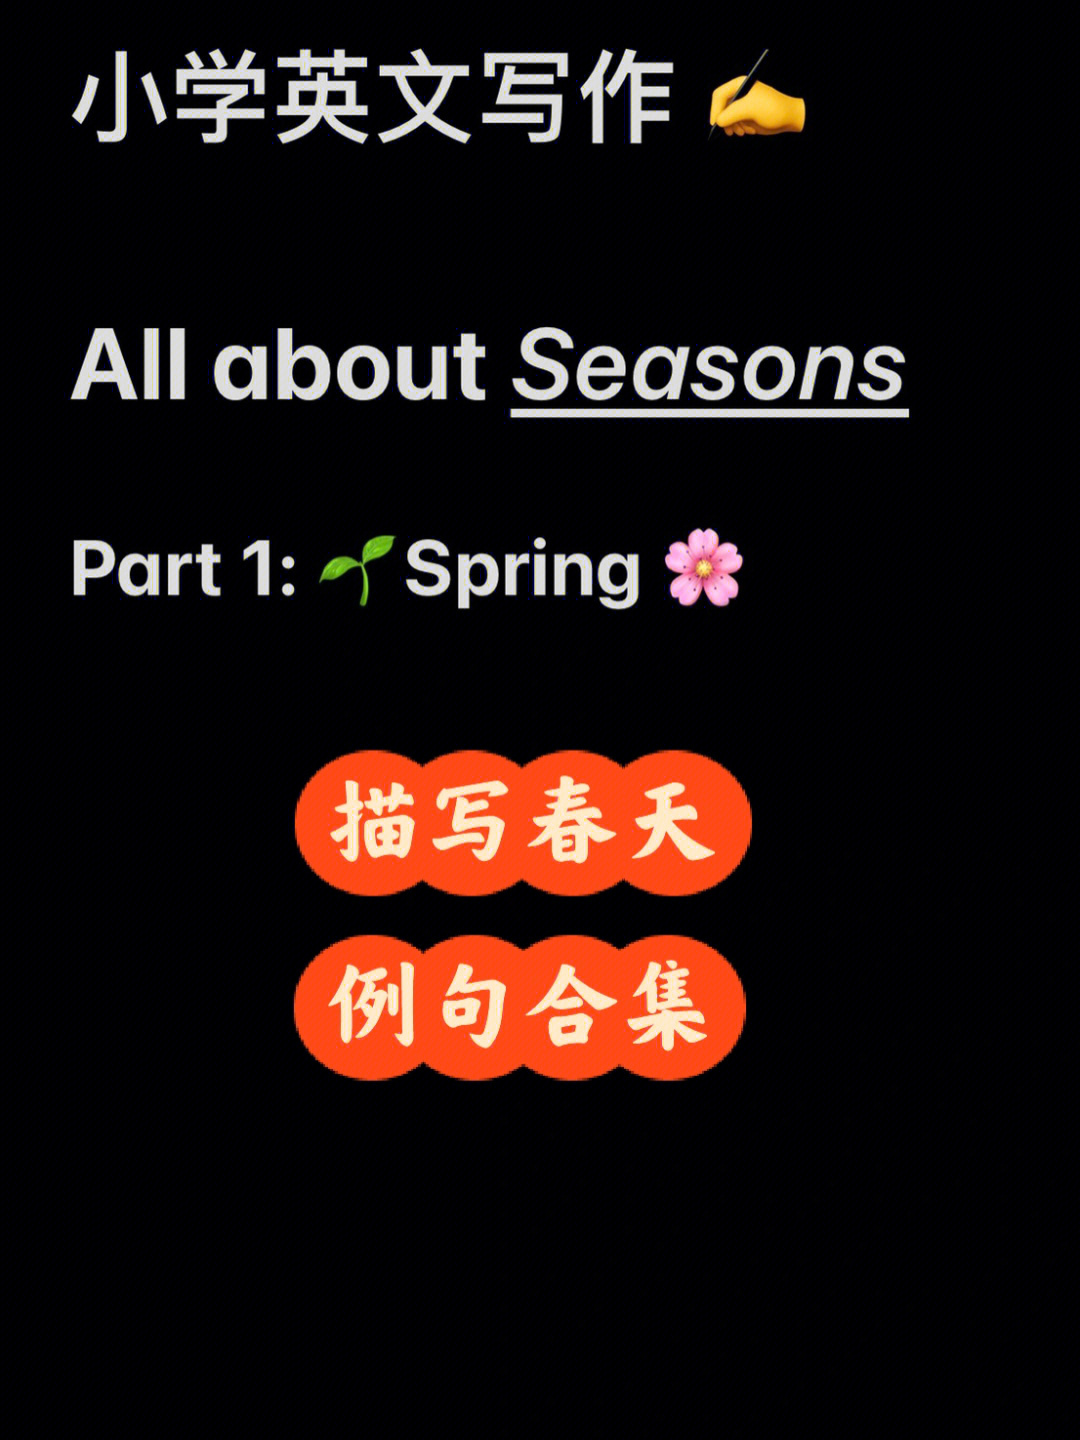 英语写作描写四季例句短语合集1spring春